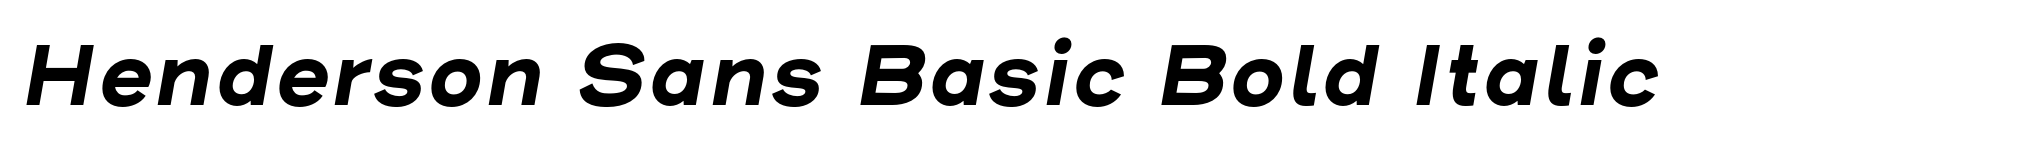 Henderson Sans Basic Bold Italic image